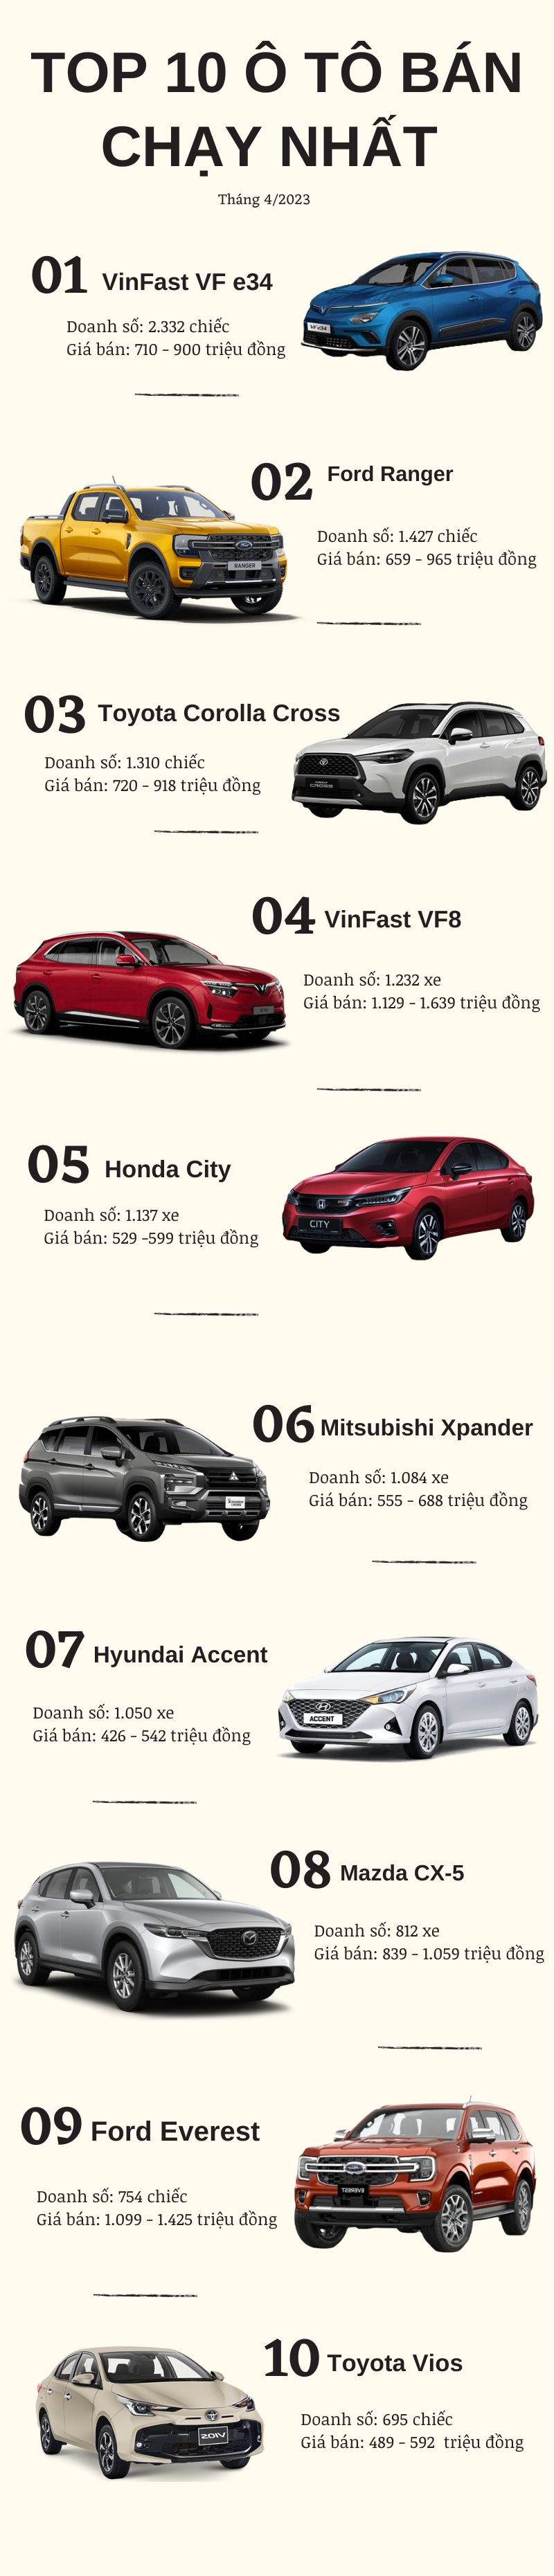 Top 10 ô tô bán chạy nhất tháng 3/2023: VinFast VF e34 lần đầu lên đỉnh, bỏ xa Ford Ranger, Mitsubishi Xpander - Ảnh 2.